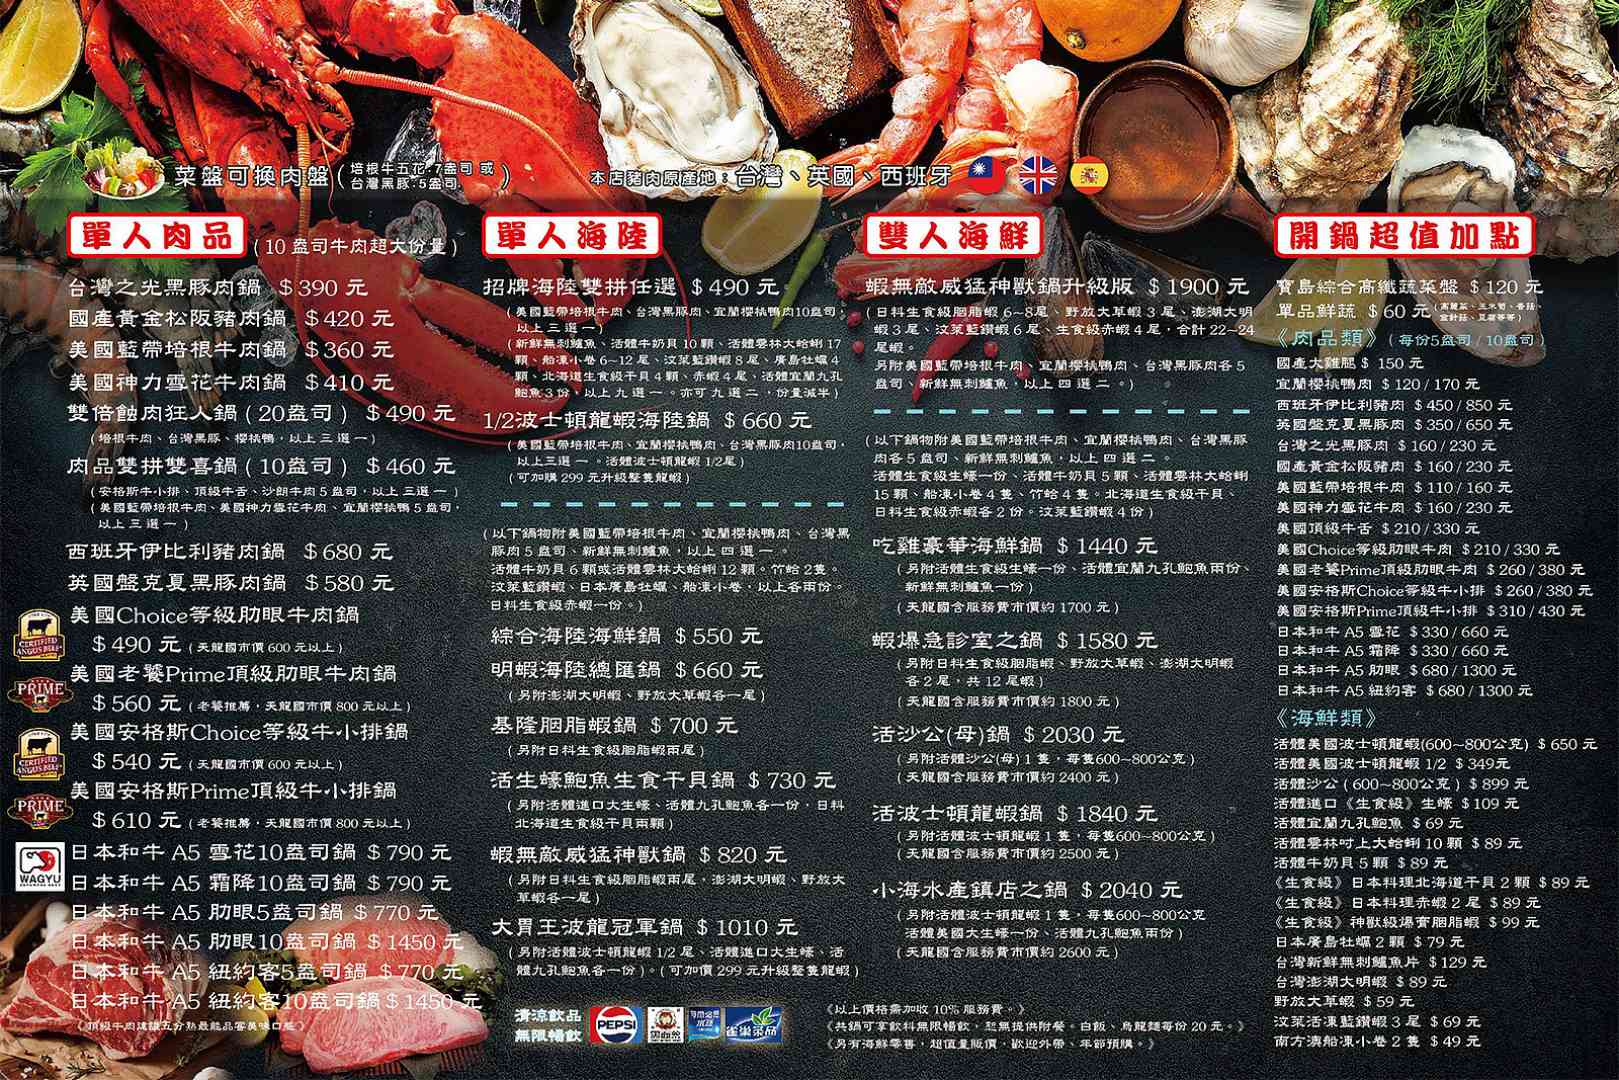 小海水產, 小海水產民生店, 永和美食, 小海水產菜單, 聚寶盆海鮮